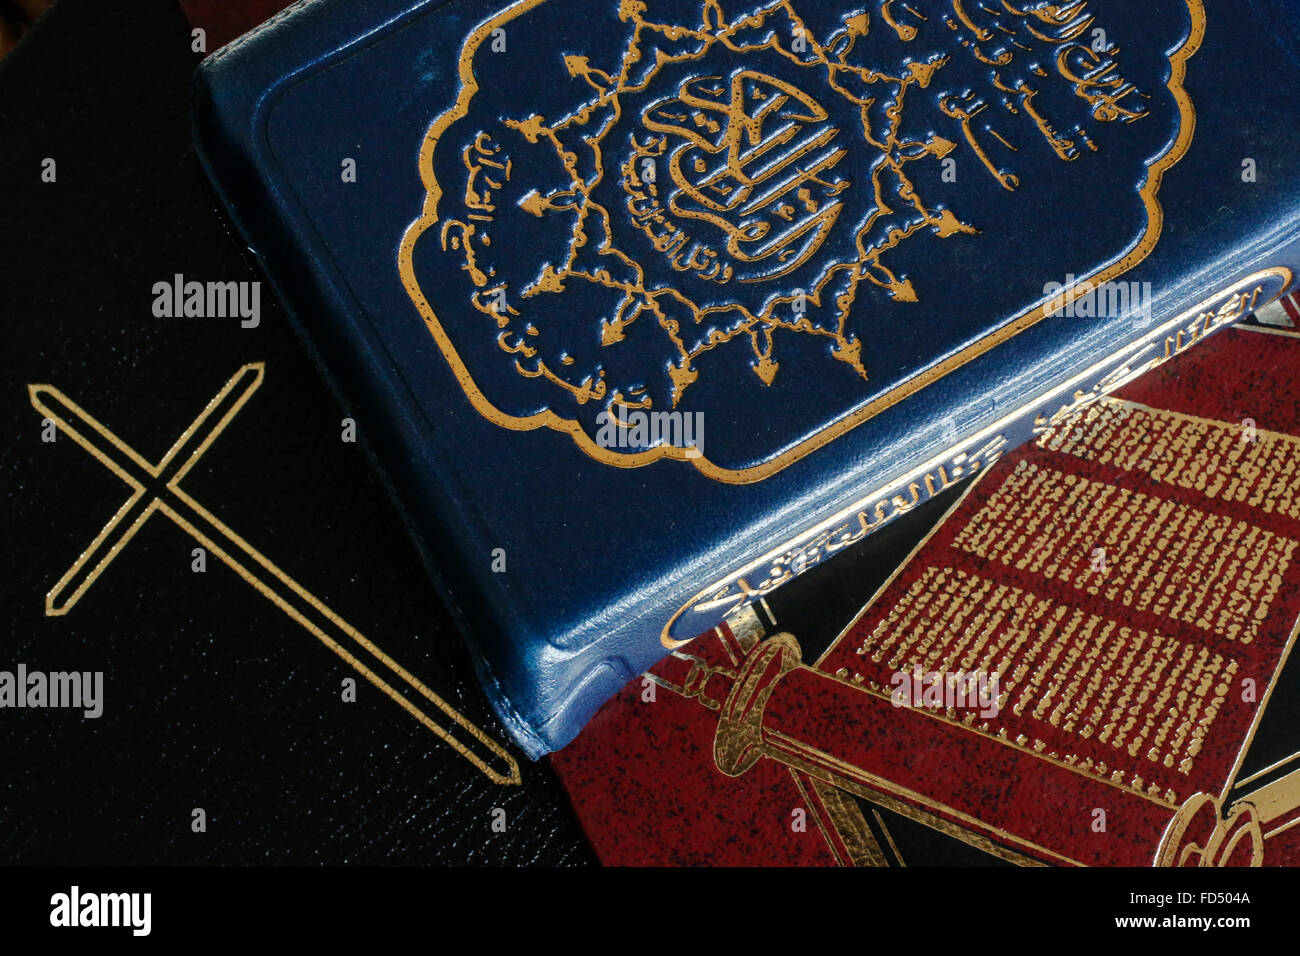 Torah, Bible and Quran. Interfaith. Stock Photo